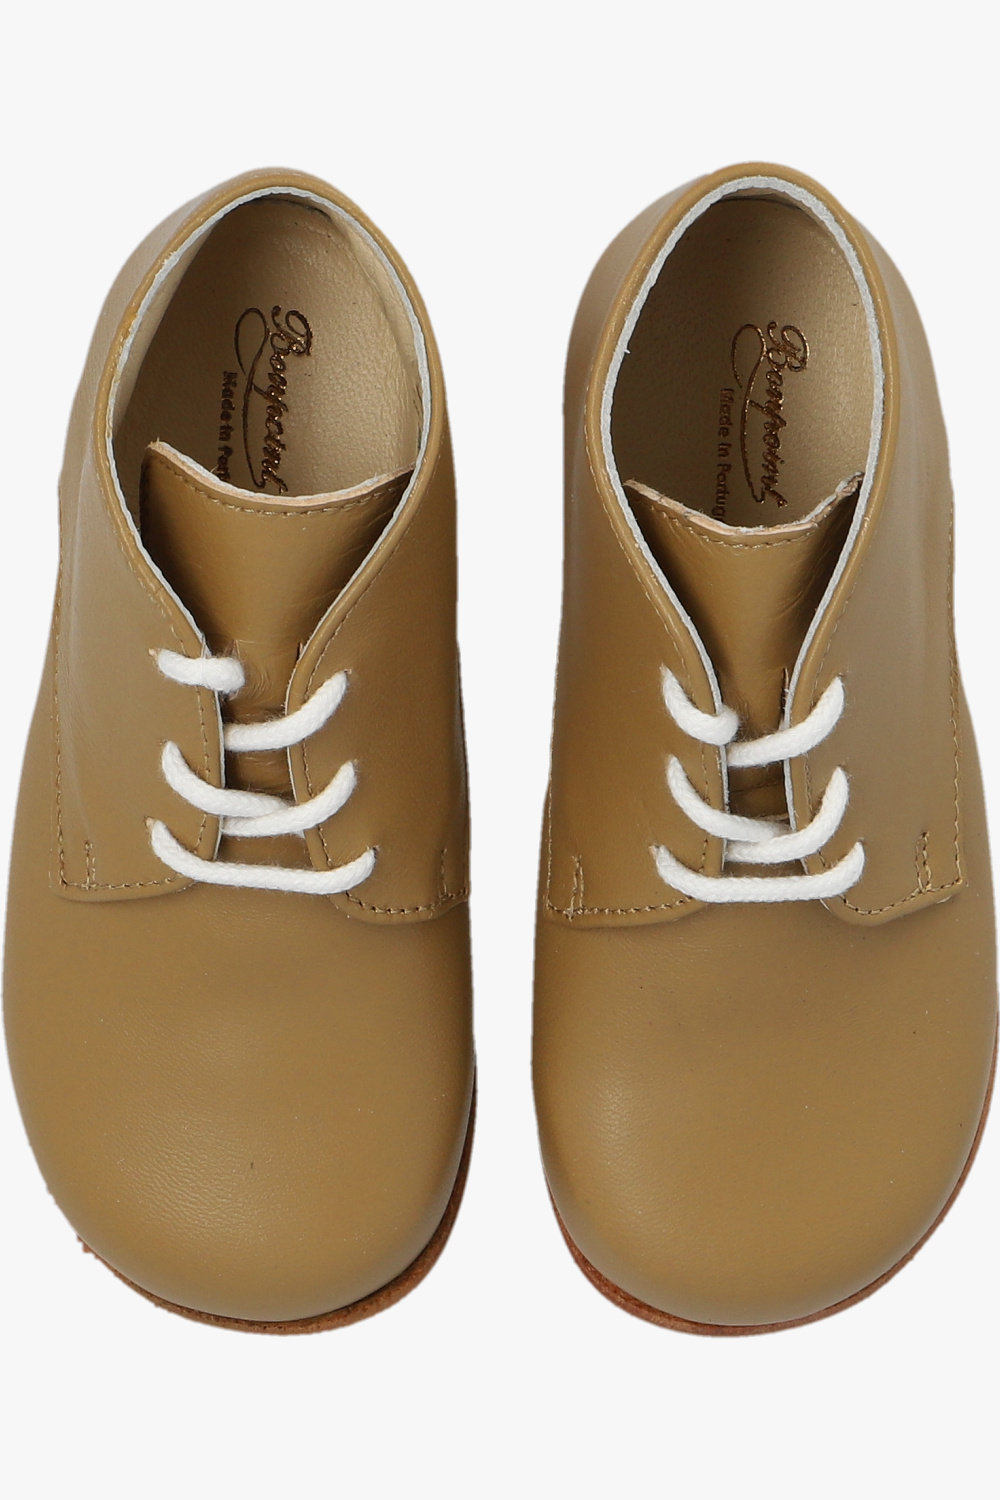 Bonpoint  ‘Joyau’ leather ankle boots